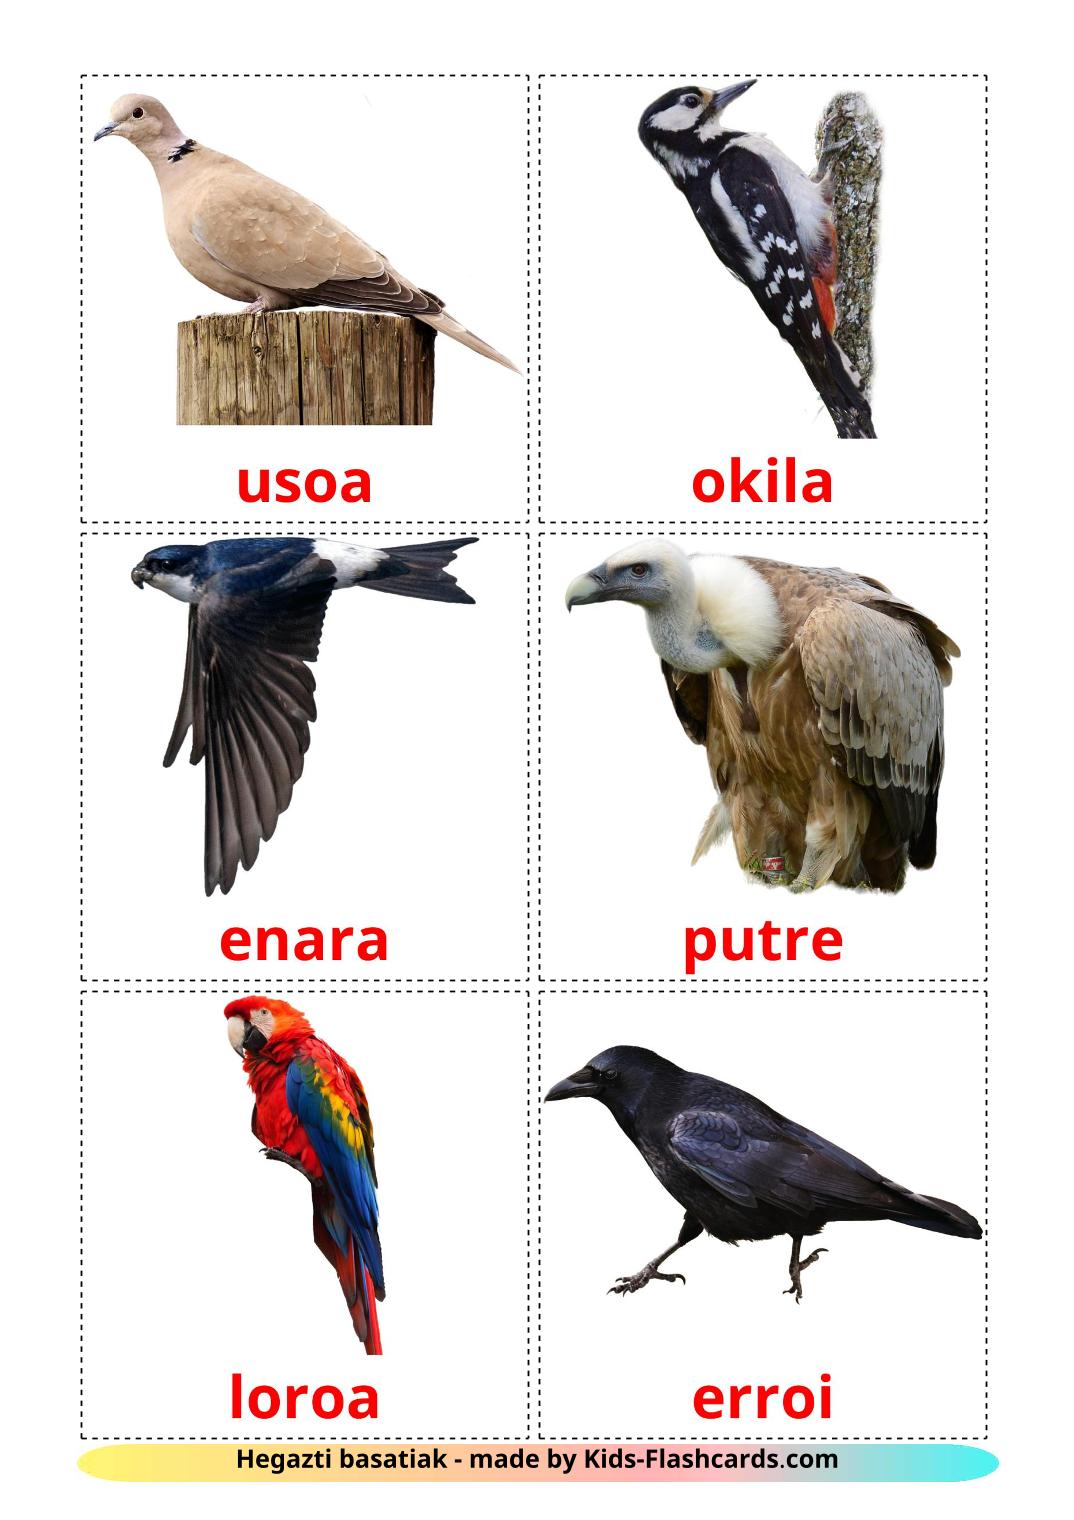 Les Oiseaux Sauvages - 18 Flashcards basque imprimables gratuitement